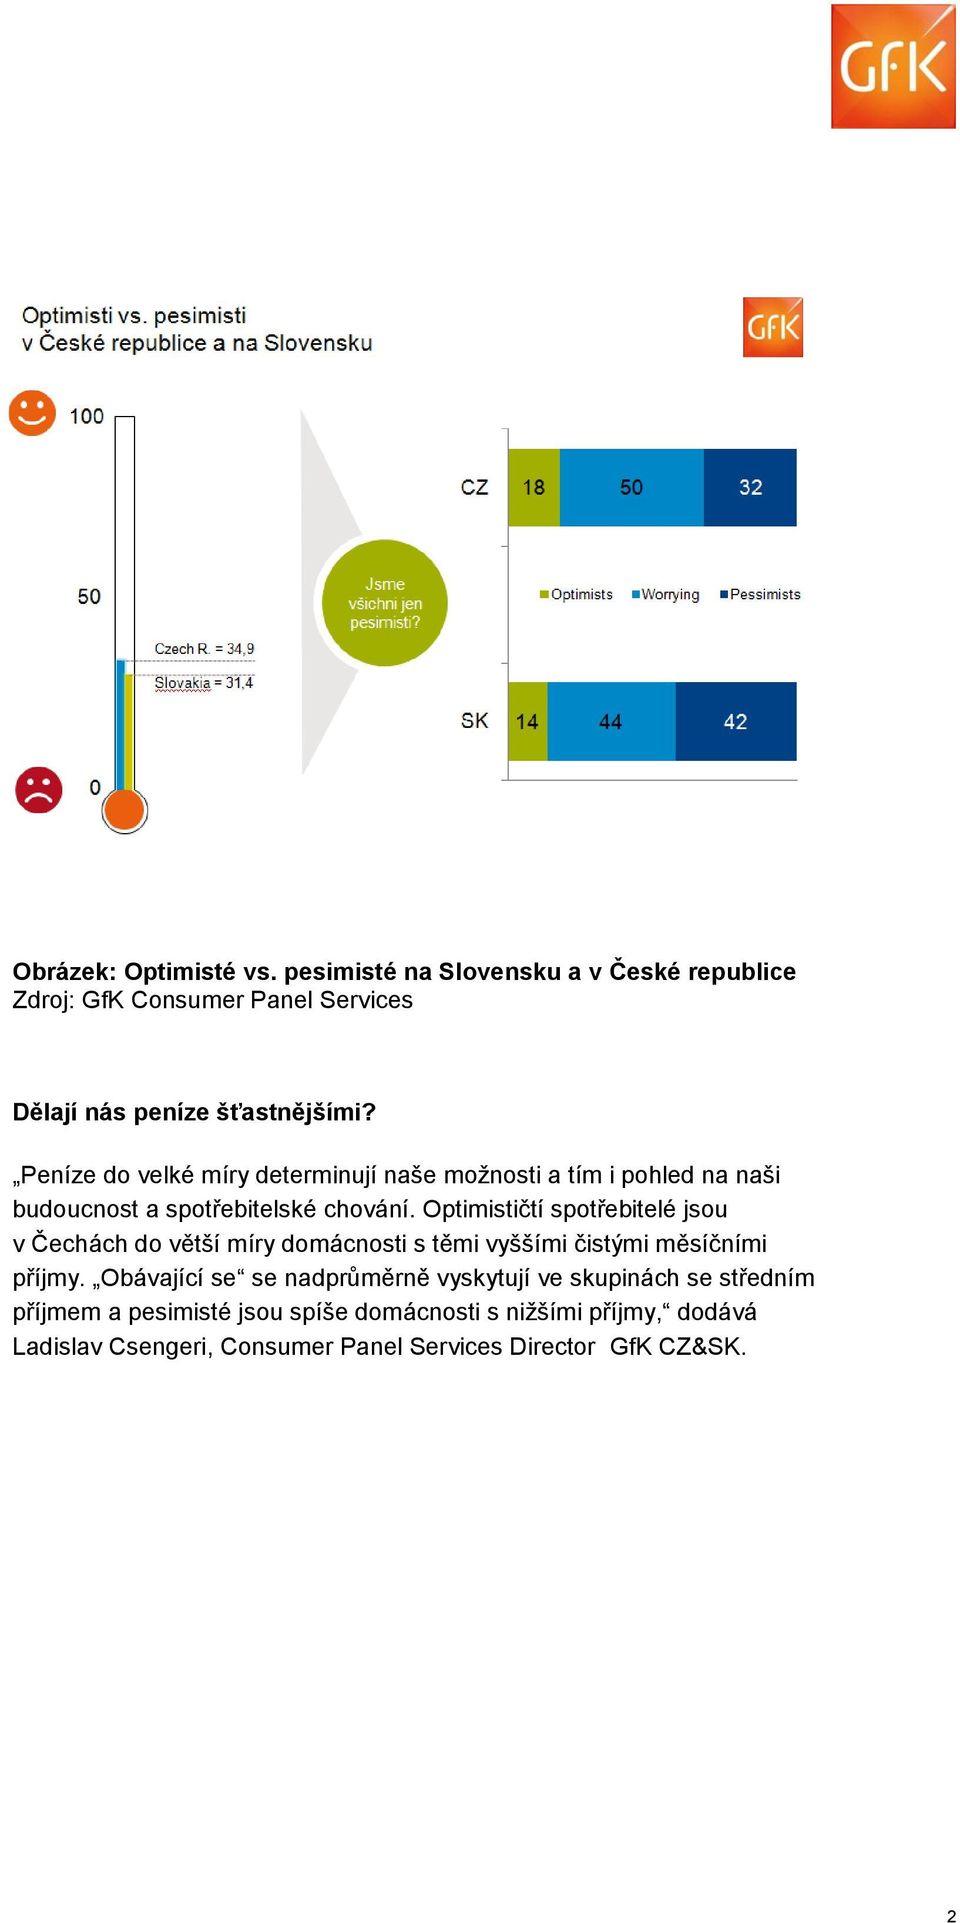 Optimističtí spotřebitelé jsou v Čechách do větší míry domácnosti s těmi vyššími čistými měsíčními příjmy.